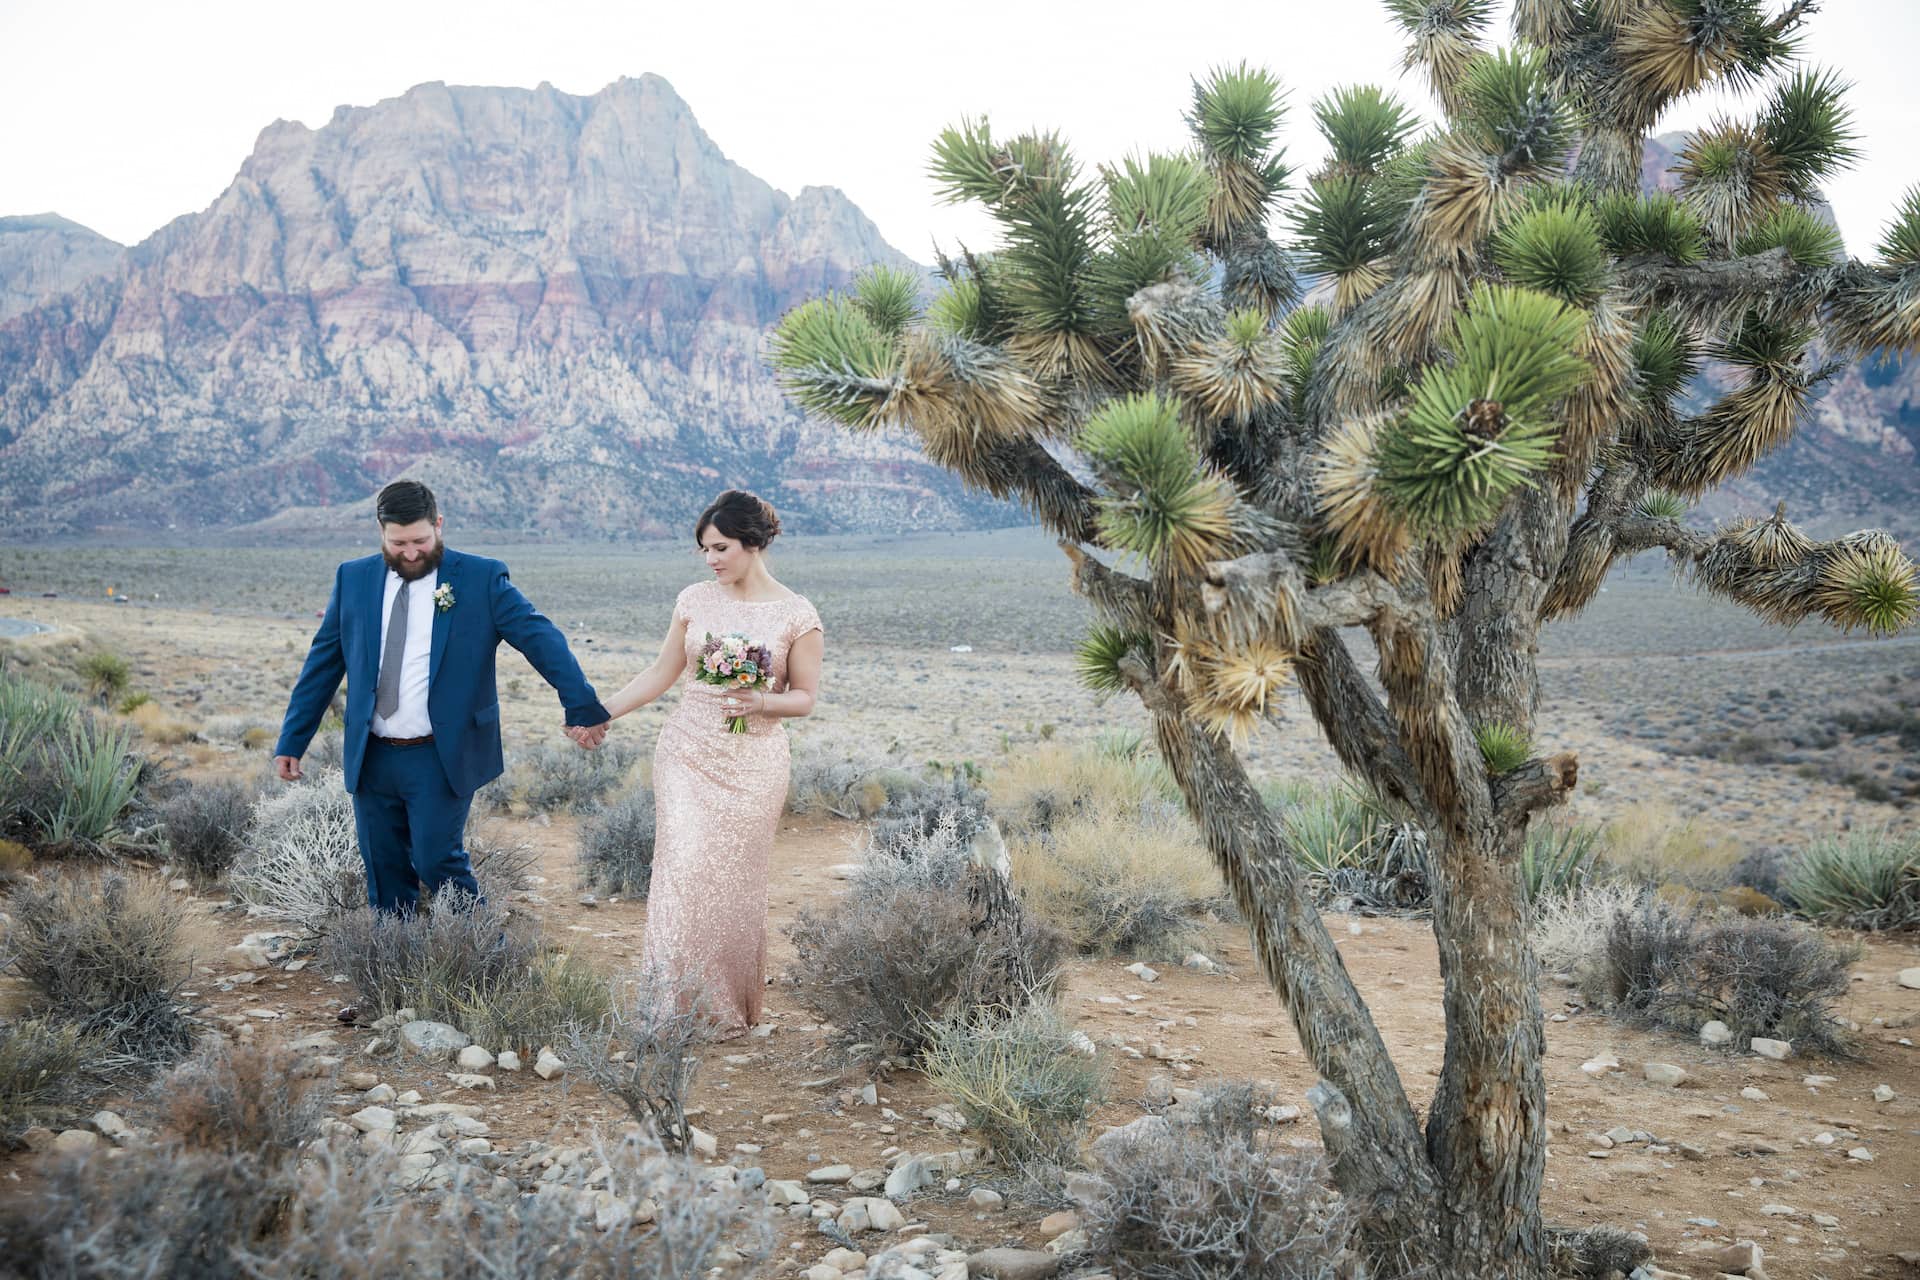 Beth + Derek eloping in the desert in Las Vegas.